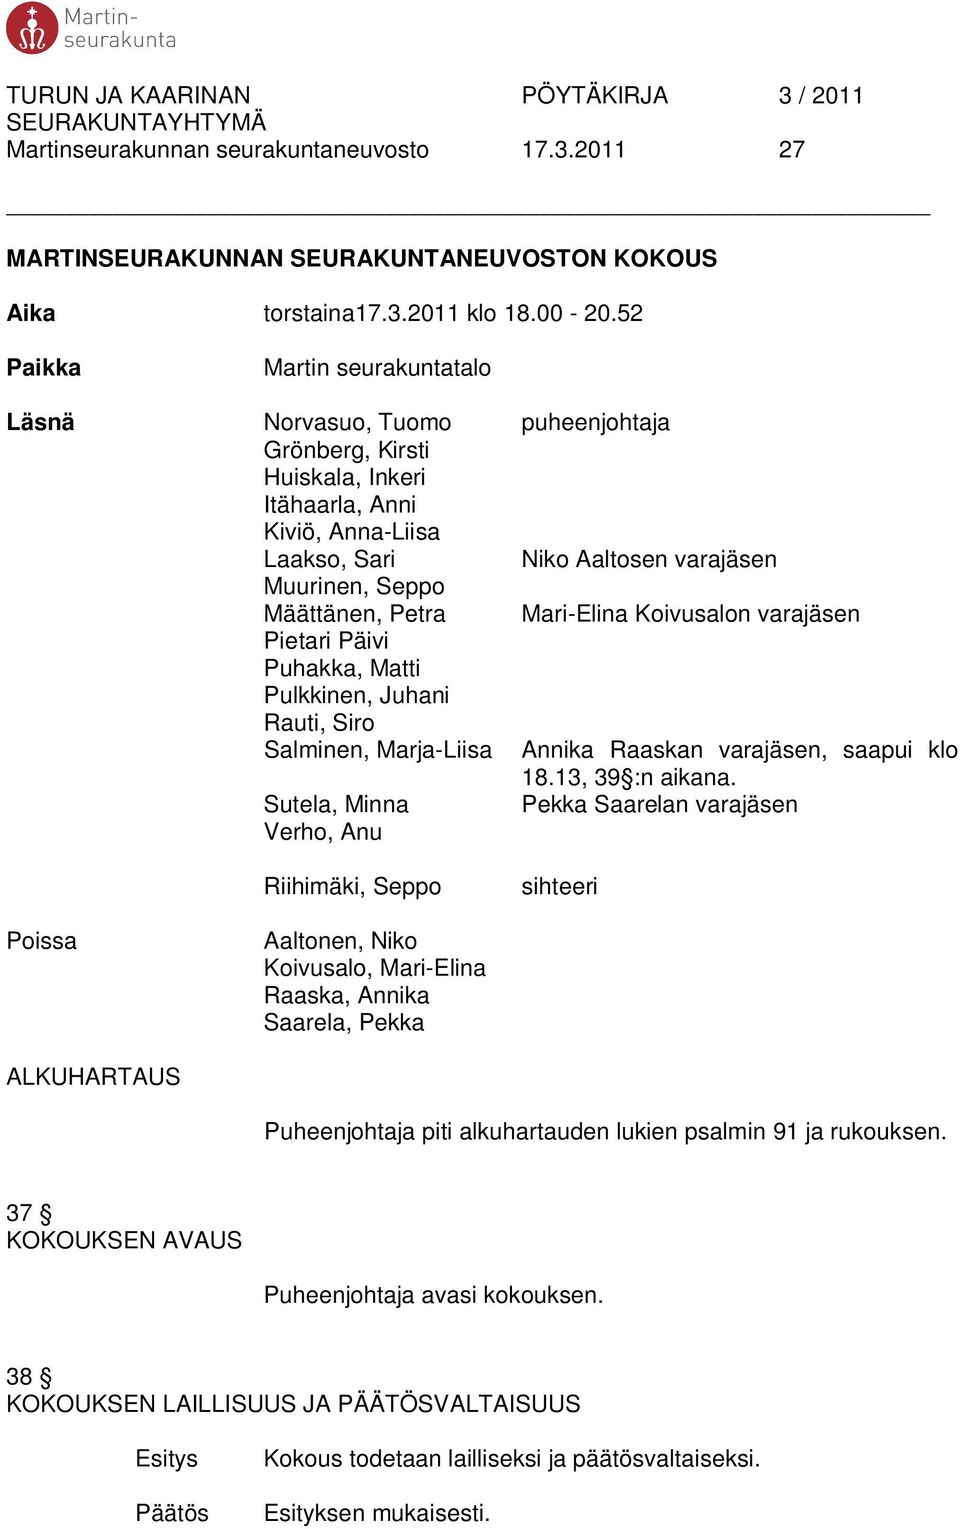 Petra Mari-Elina Koivusalon varajäsen Pietari Päivi Puhakka, Matti Pulkkinen, Juhani Rauti, Siro Salminen, Marja-Liisa Annika Raaskan varajäsen, saapui klo 18.13, 39 :n aikana.